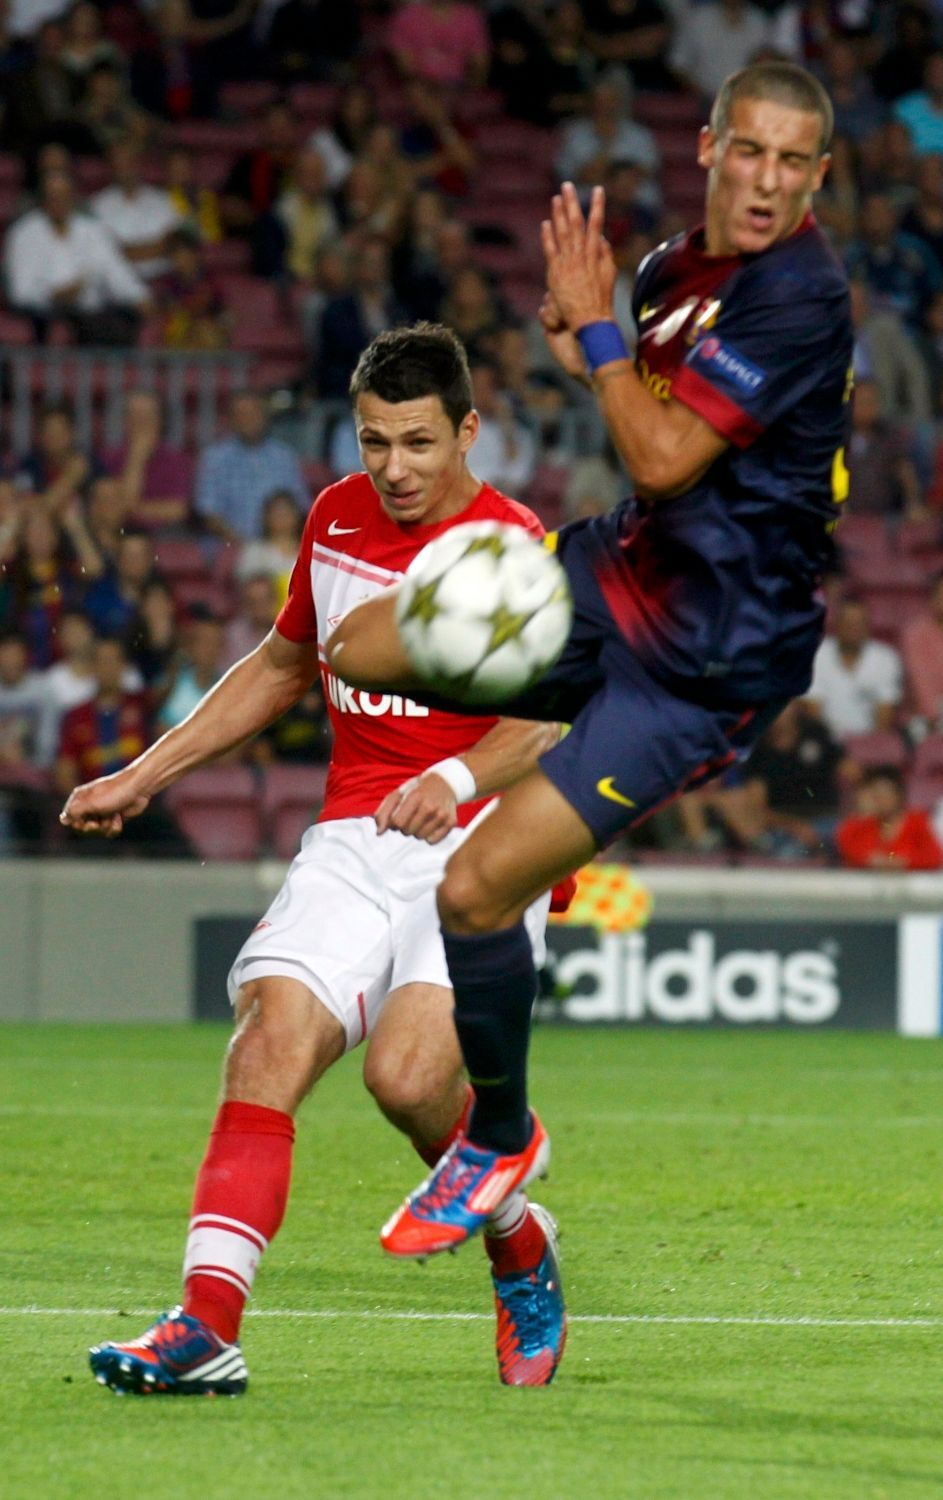 Fotbalista Marek Suchý ze Spartaku Moskva se snaží bránit Christiana Tella z Barcelony v utkání Ligy mistrů 2012/13.